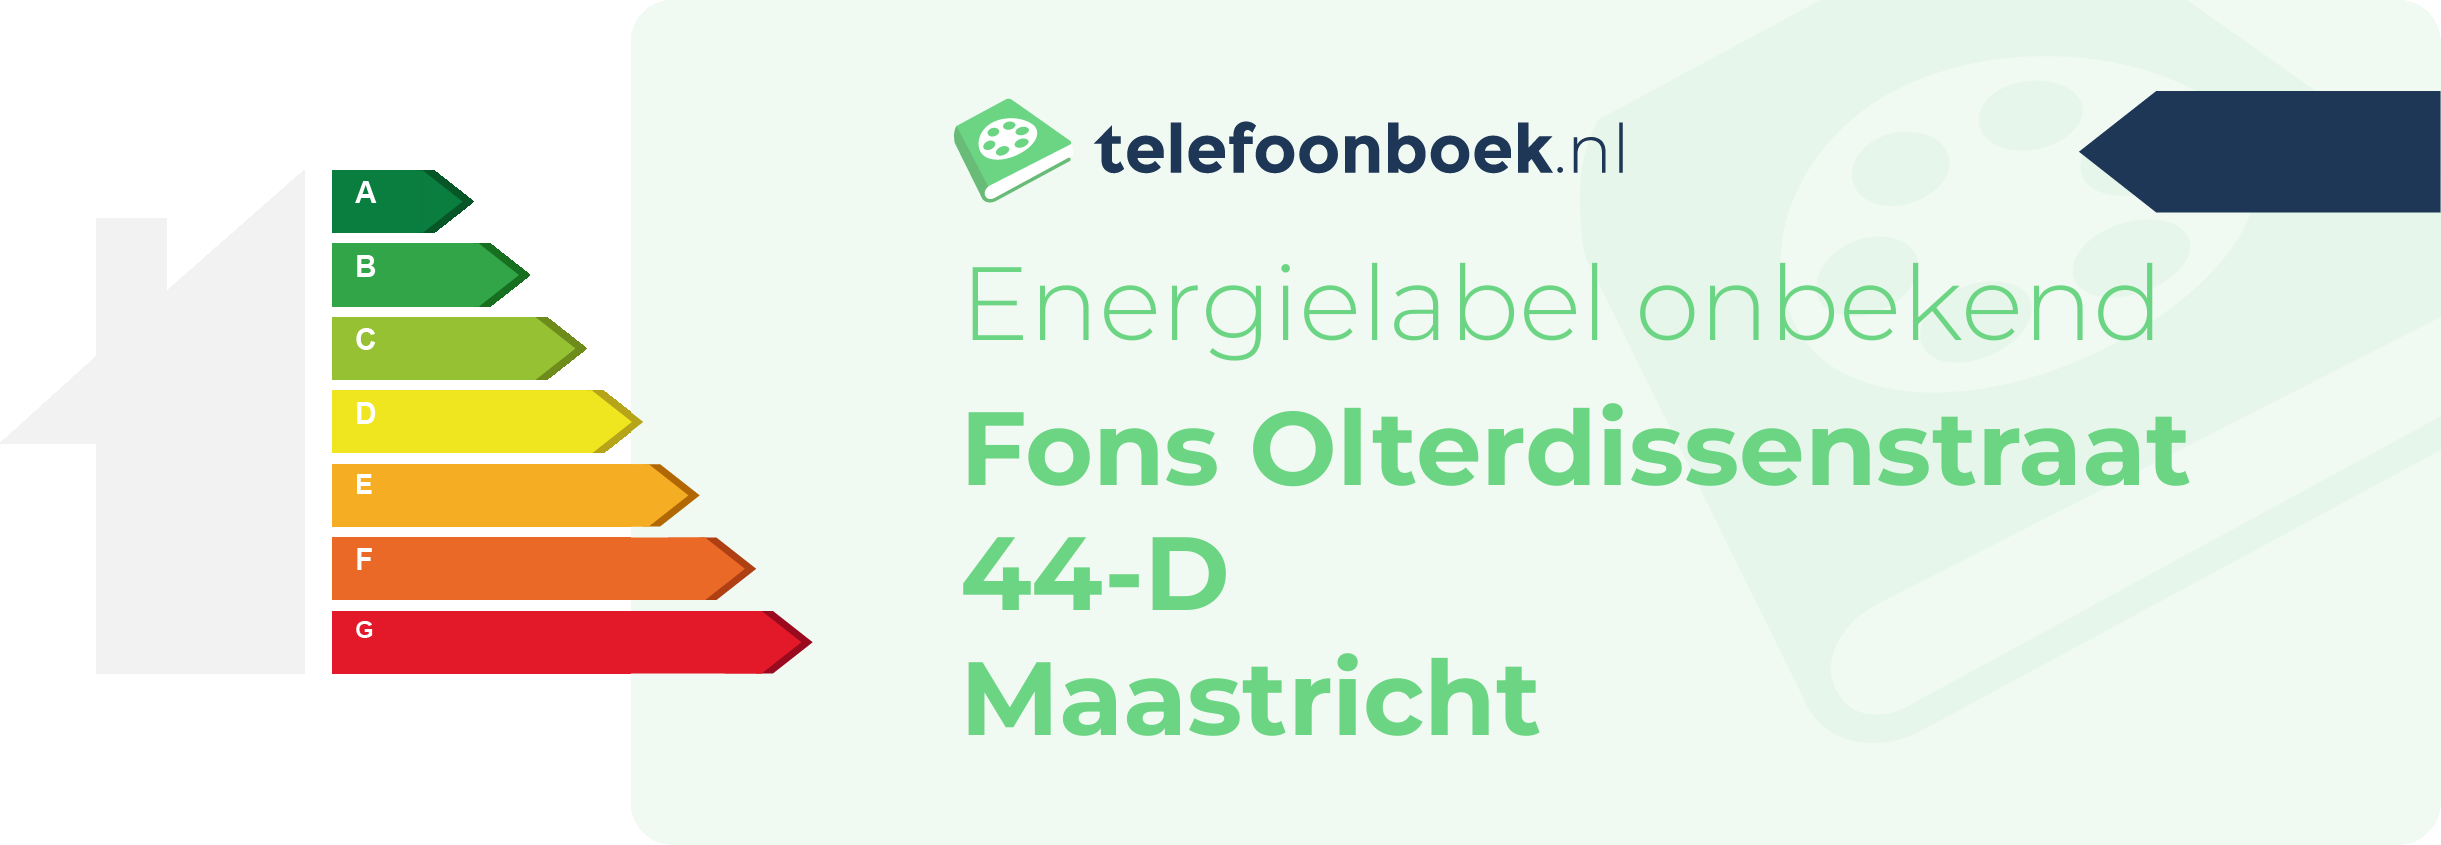 Energielabel Fons Olterdissenstraat 44-D Maastricht